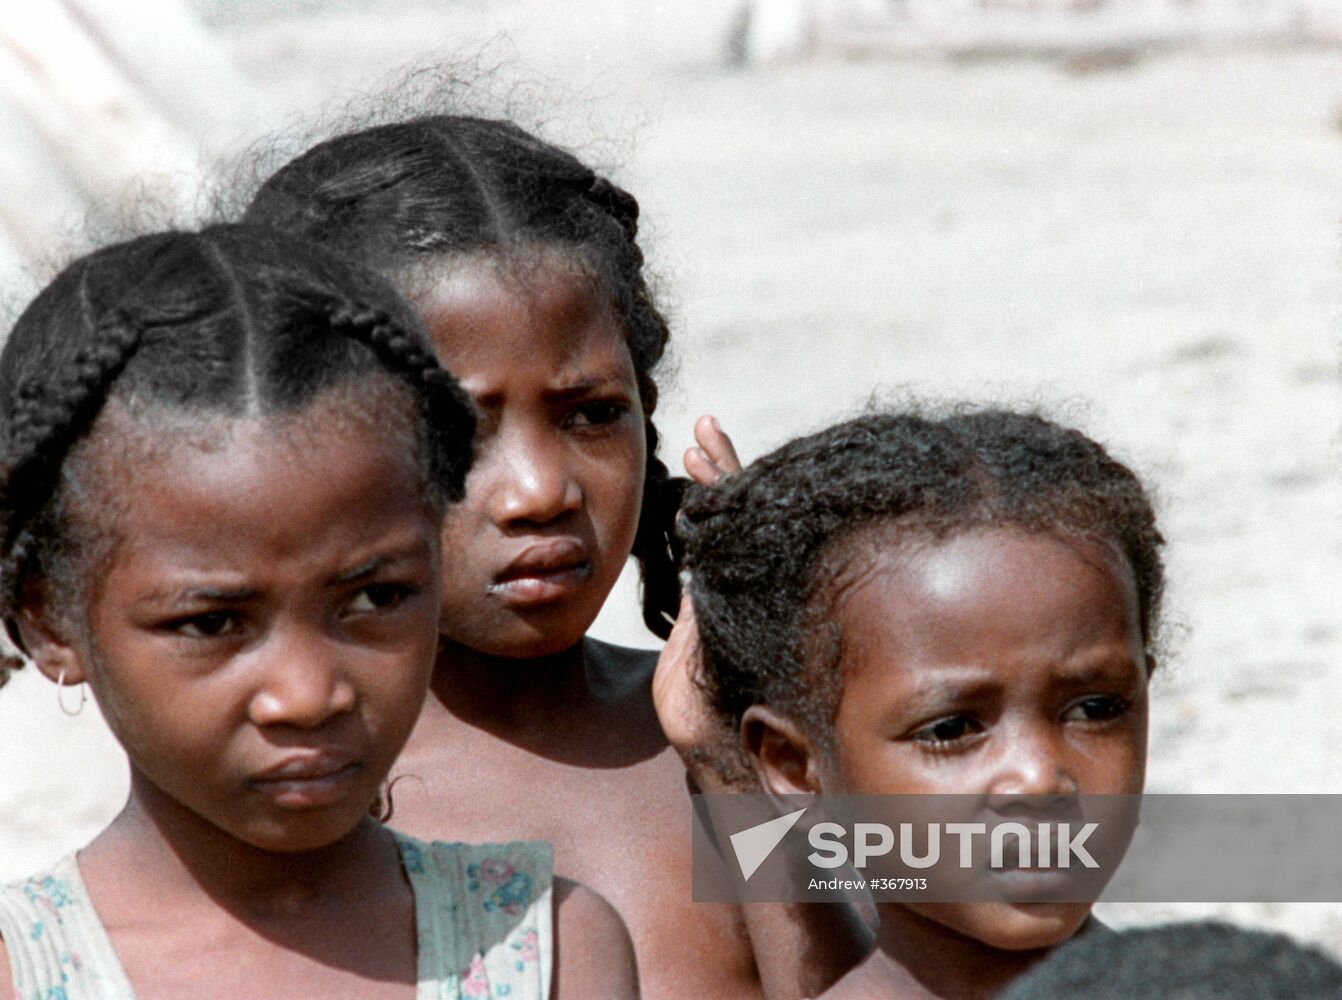 Children from Madagascar